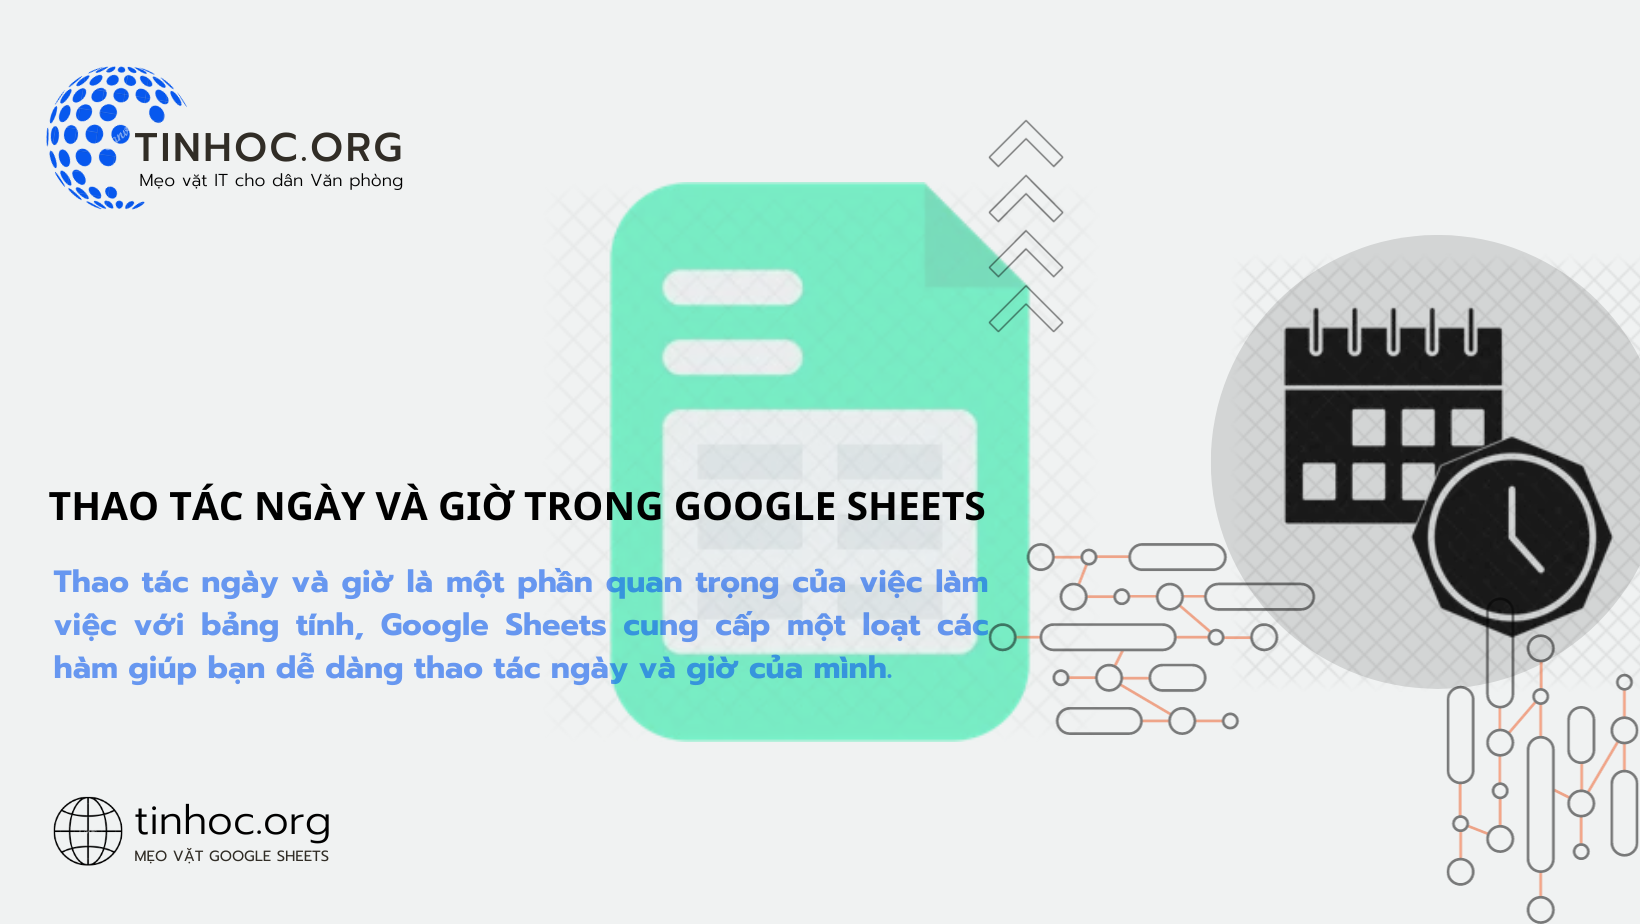 Tìm hiểu cách thao tác ngày và giờ trong Google Sheets với các hàm cơ bản và nâng cao, giúp bạn dễ dàng quản lý dữ liệu thời gian trong bảng tính.